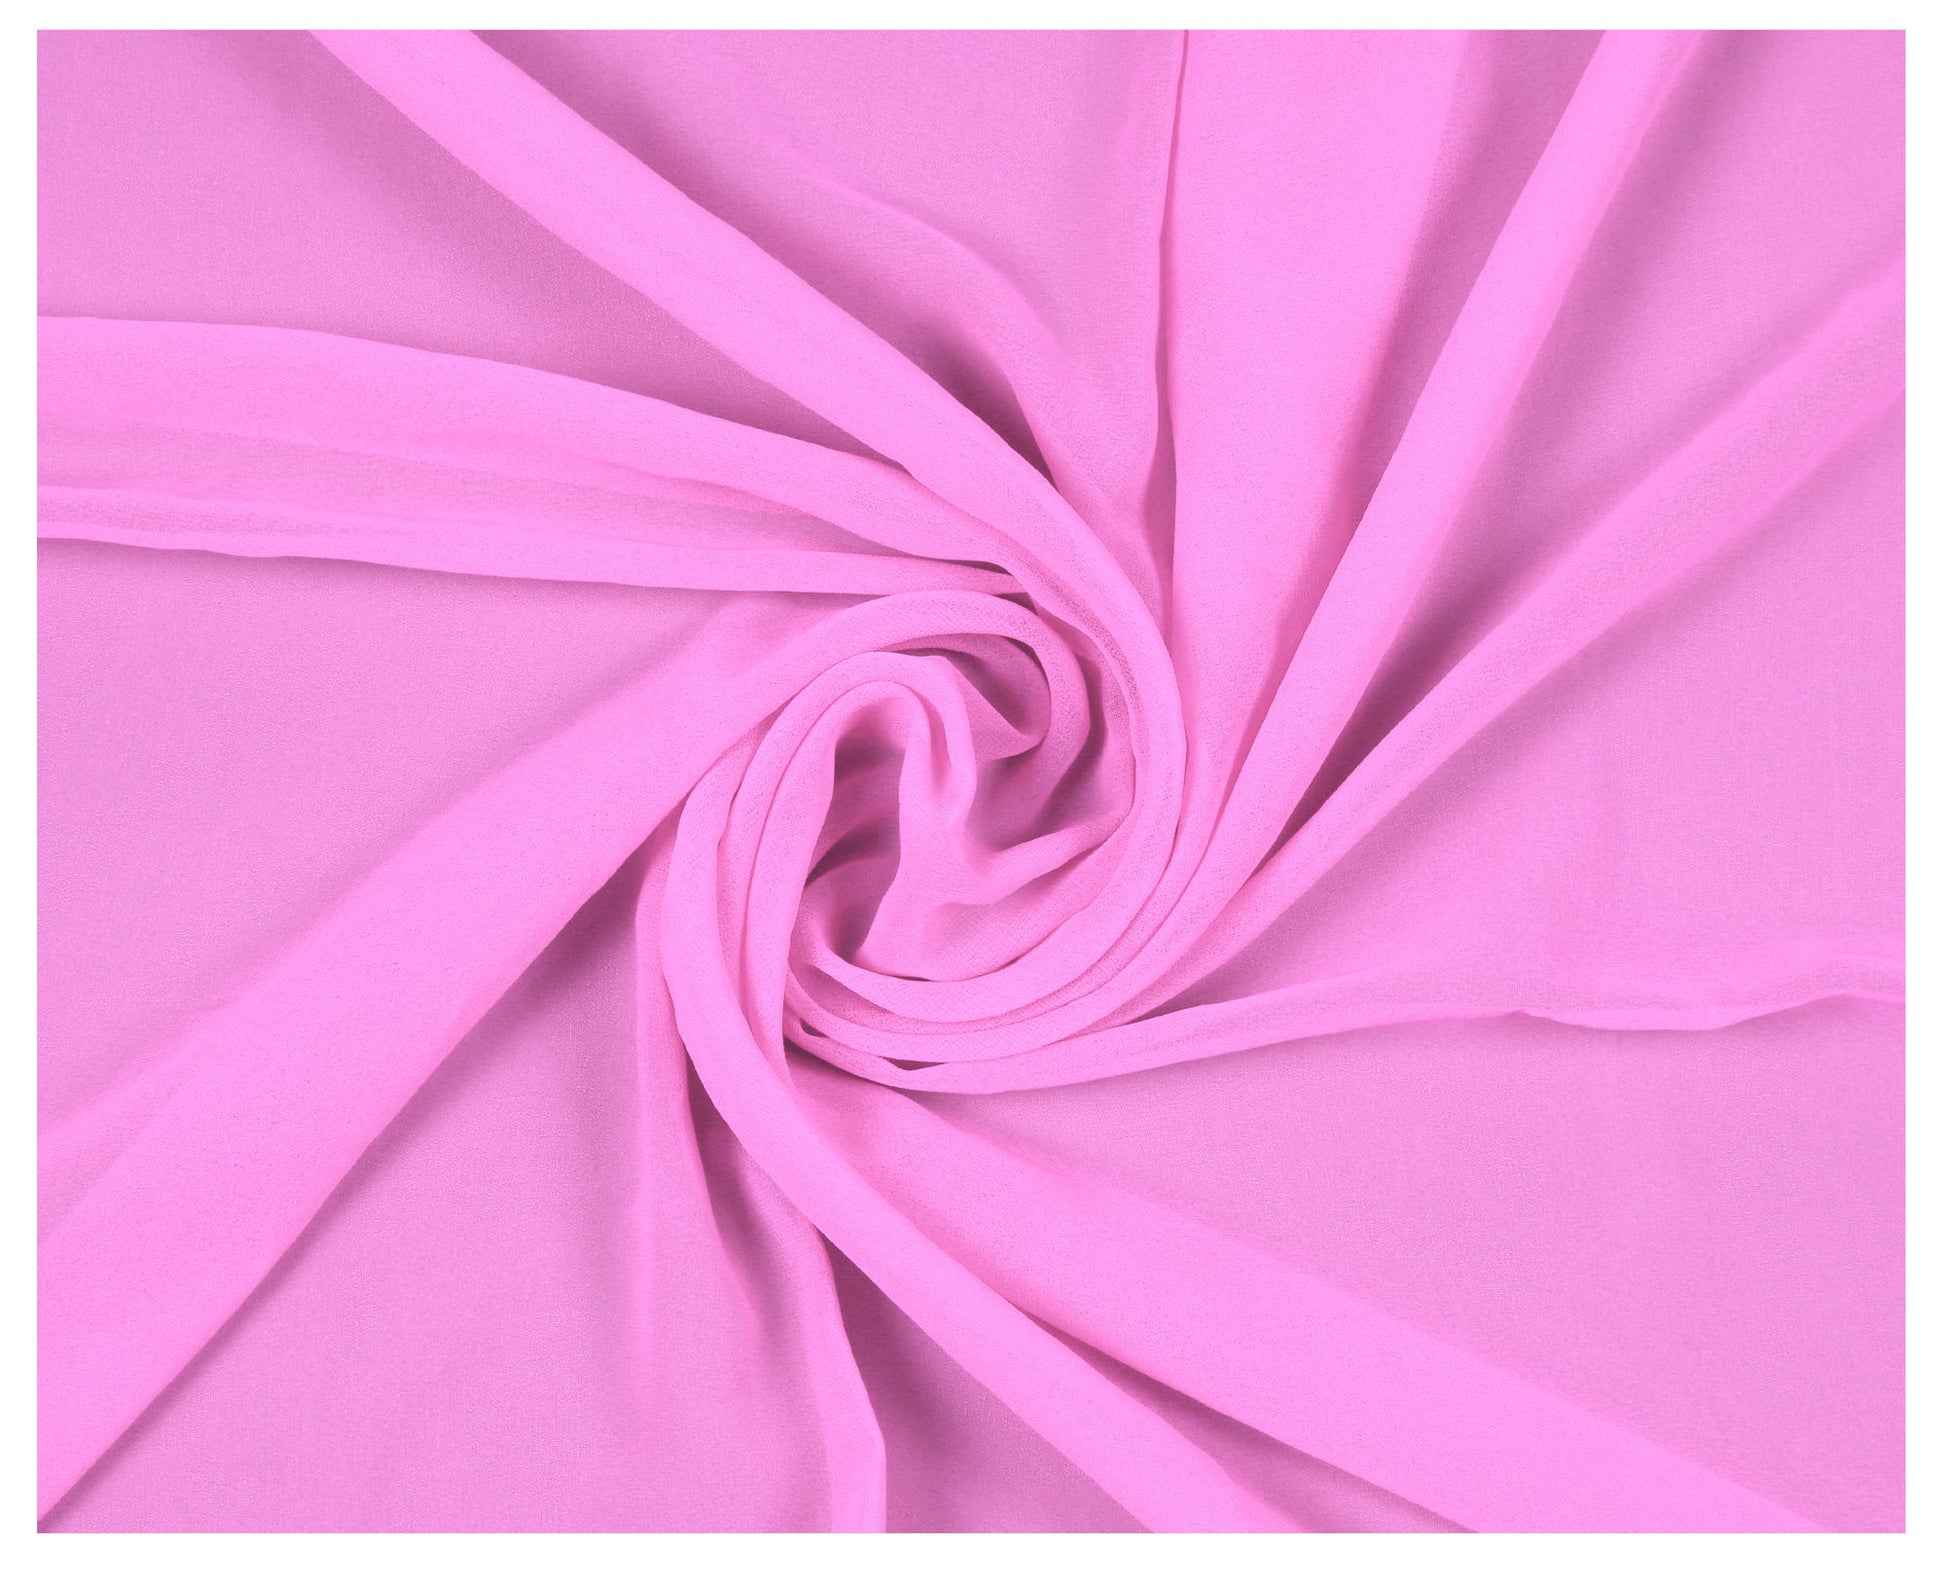 Bubblegum Pink,7b45f08b-e454-44de-a304-c28faf194492